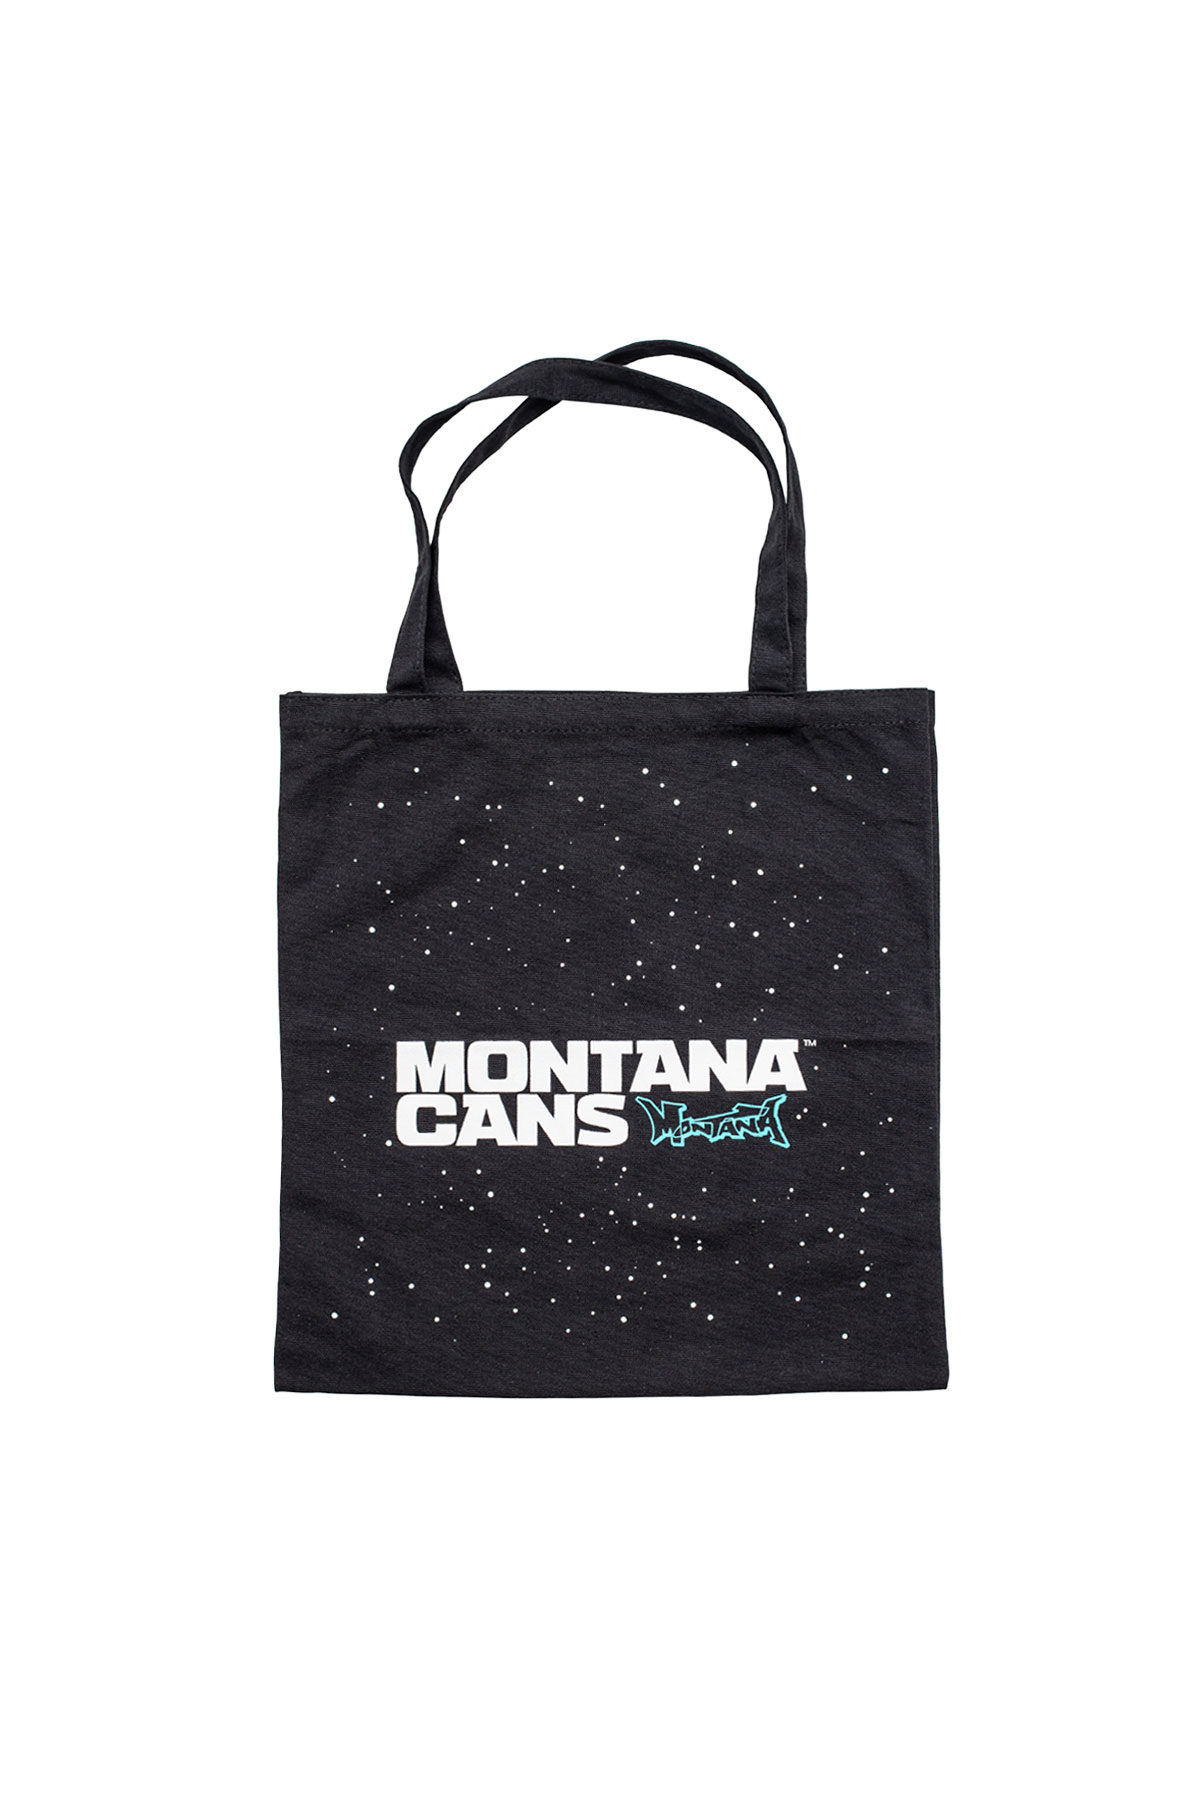 Montana TYPO+LOGO STARS Cotton Bag